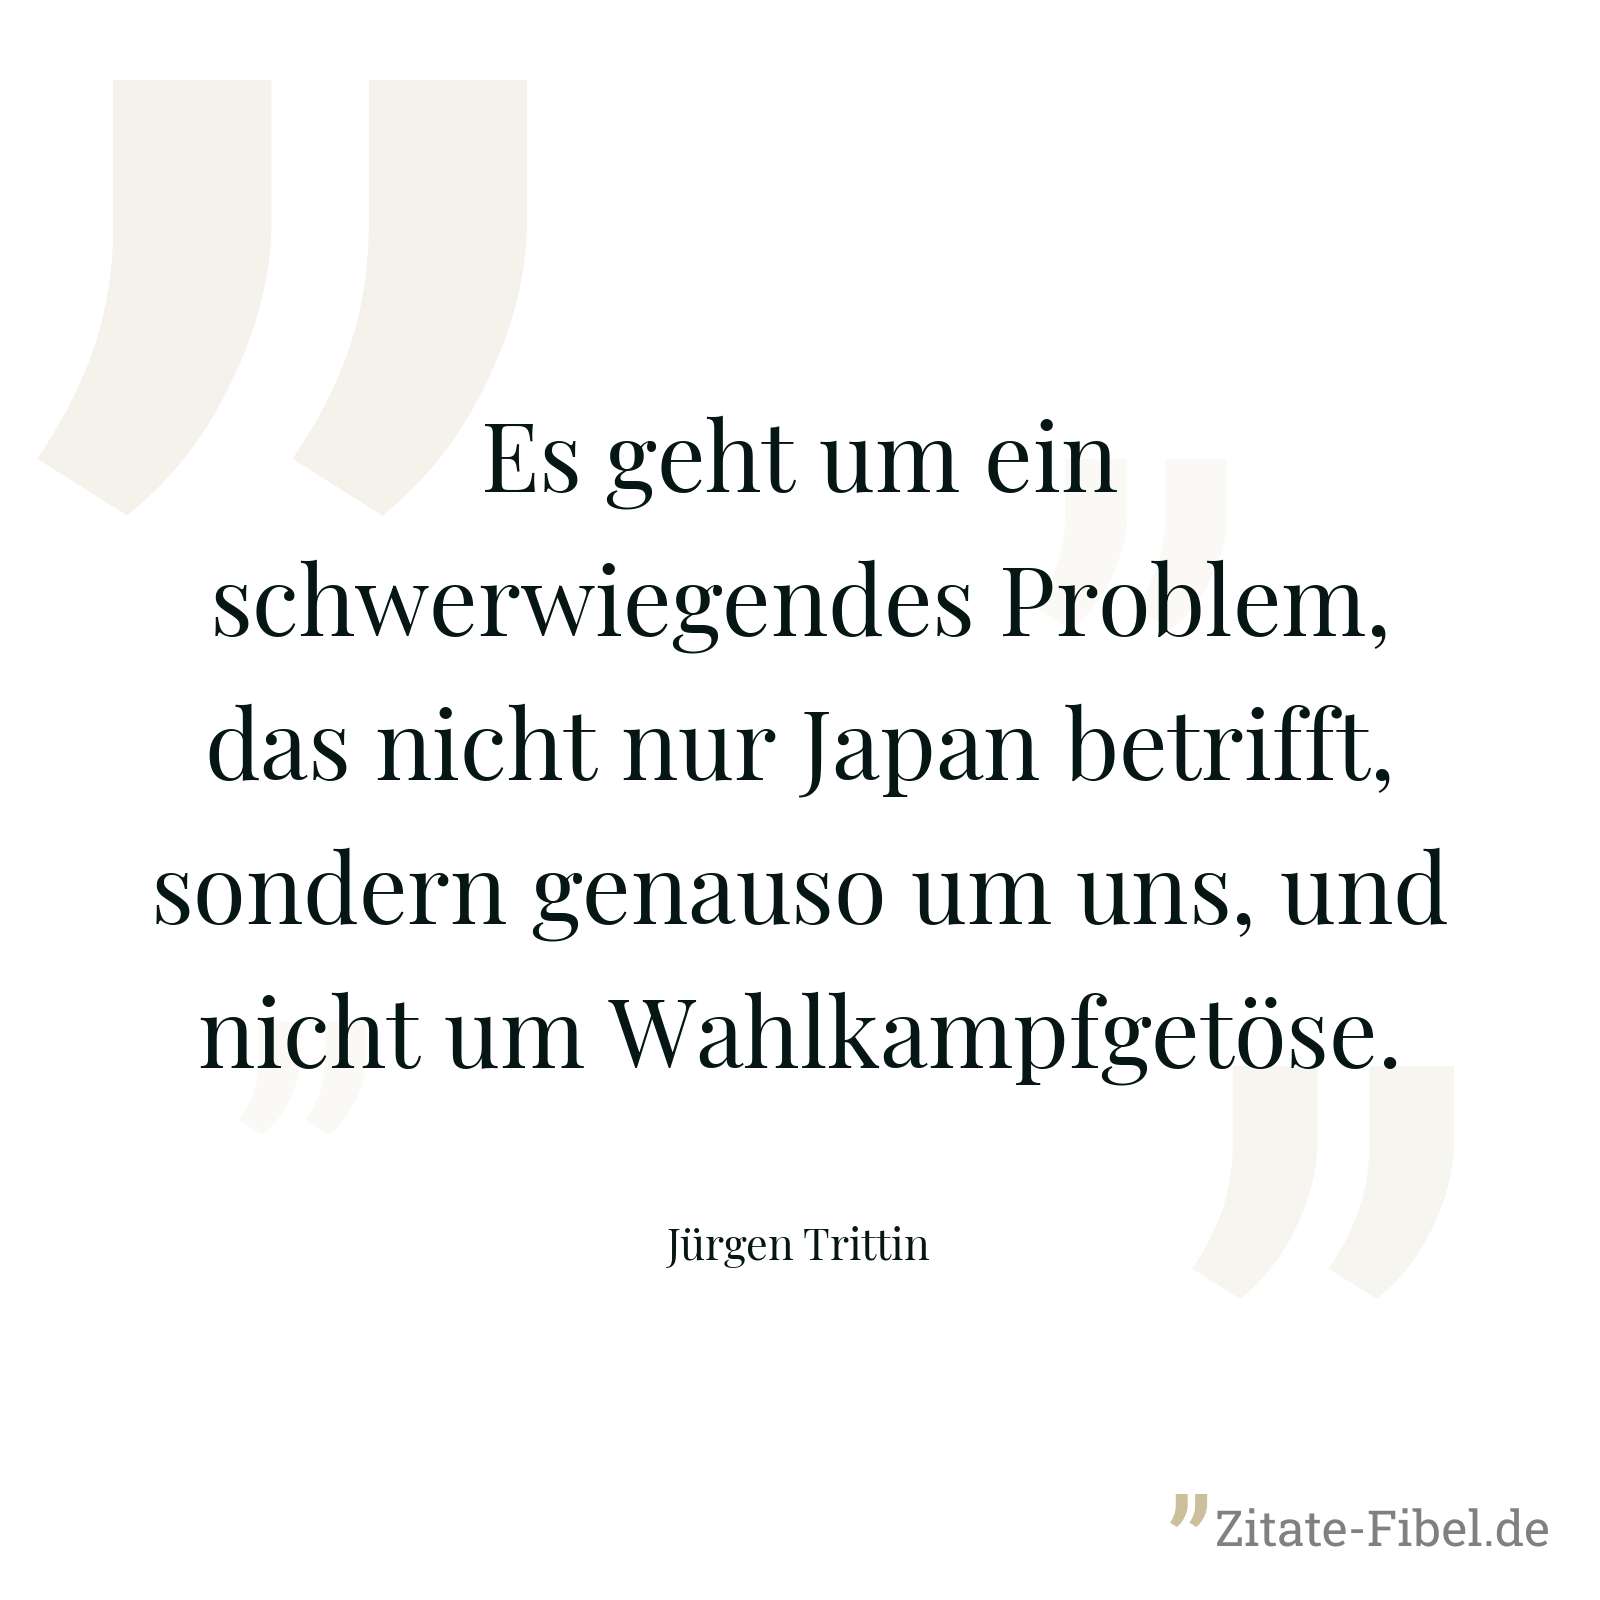 Es geht um ein schwerwiegendes Problem, das nicht nur Japan betrifft, sondern genauso um uns, und nicht um Wahlkampfgetöse. - Jürgen Trittin